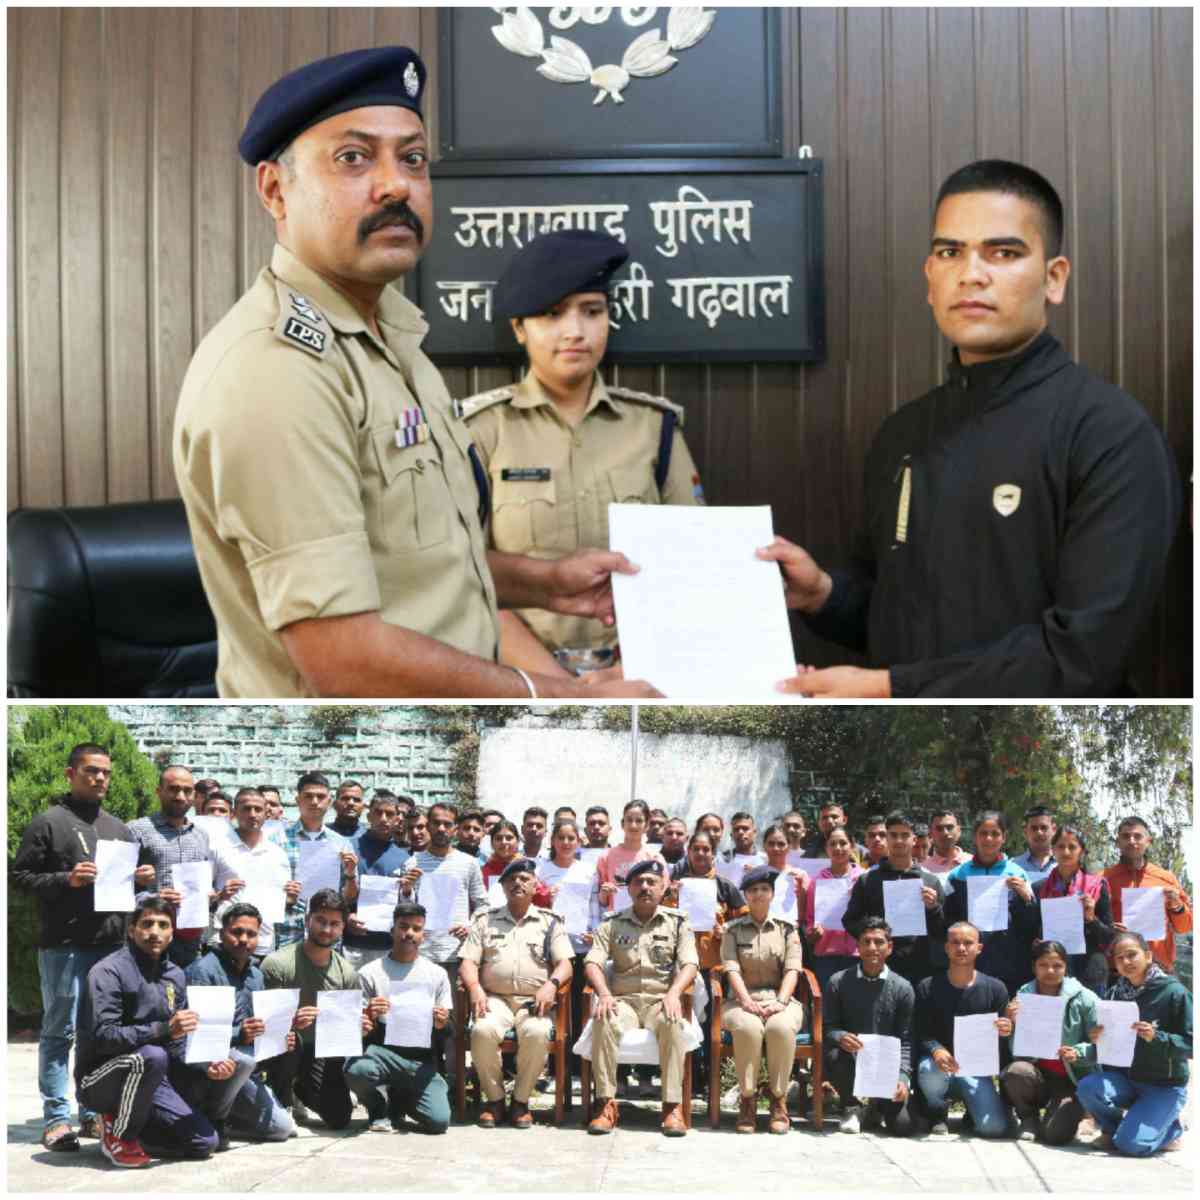 पुलिस आरक्षी के पदों पर सफल 45 अभ्यर्थियों को SSP ने प्रदान किये नियुक्ति पत्र व भविष्य के लिये दी शुभकामनाएं